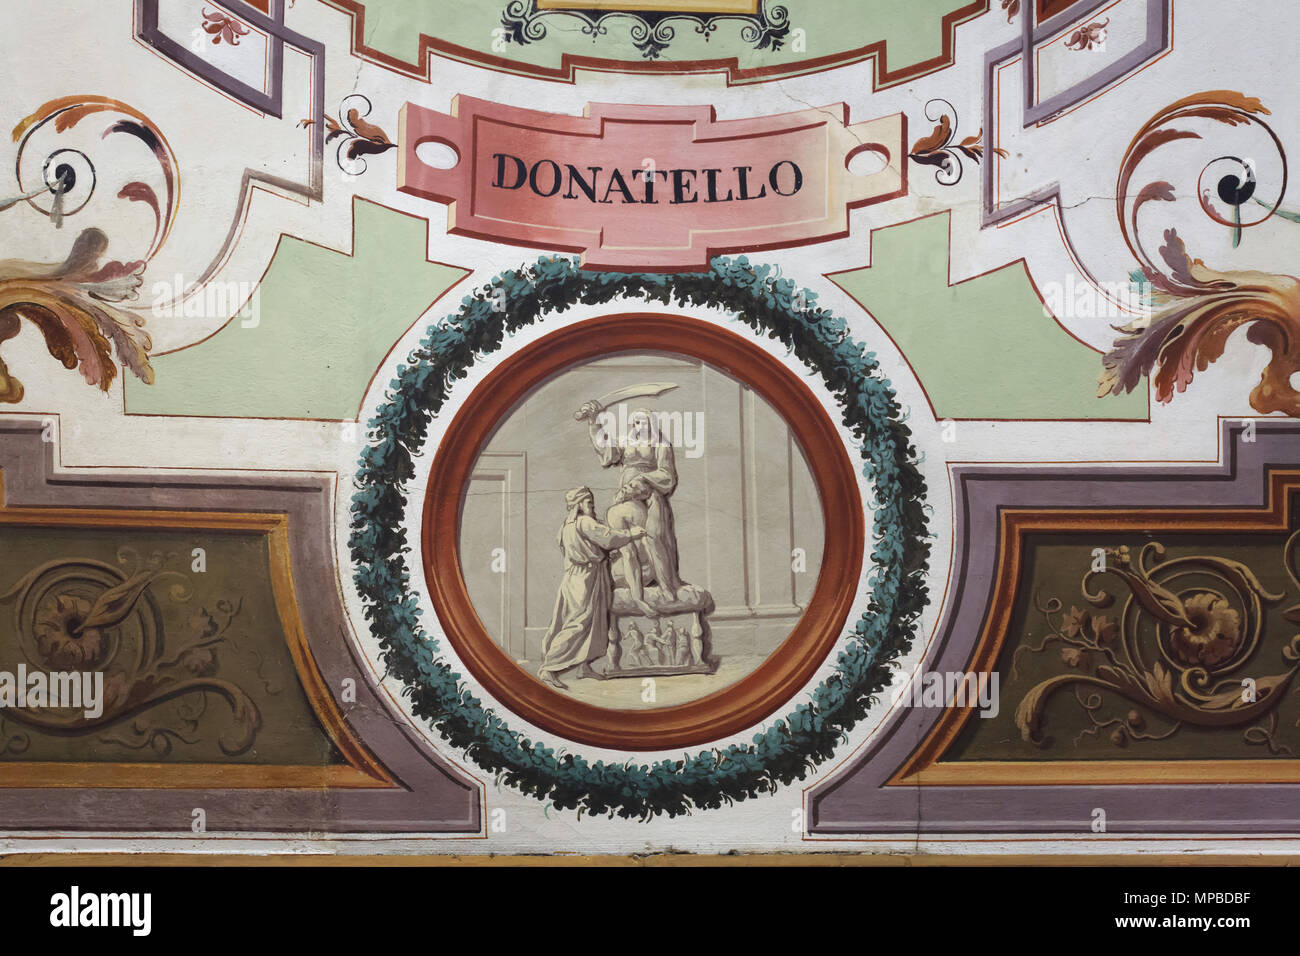 Italienische Renaissance Bildhauer Donatello arbeiten an der Bronzestatue Judith und Holofernes im Deckenfresko der Vasari Korridor in den Uffizien (Galleria degli Uffizi) in Florenz, Toskana, Italien dargestellt. Stockfoto